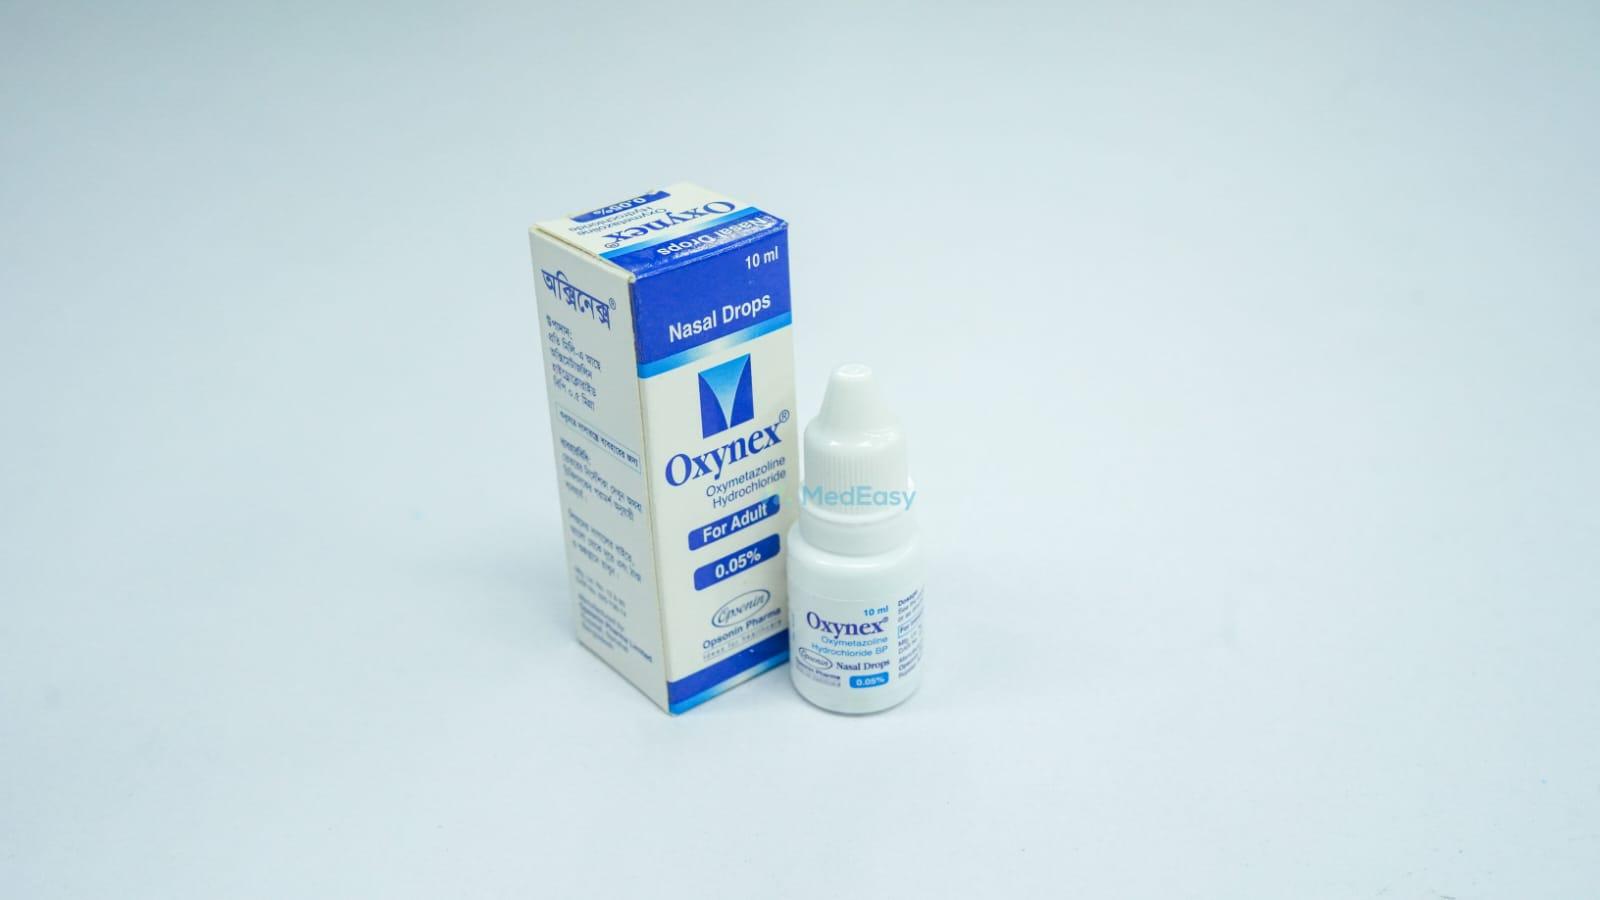 Oxynex